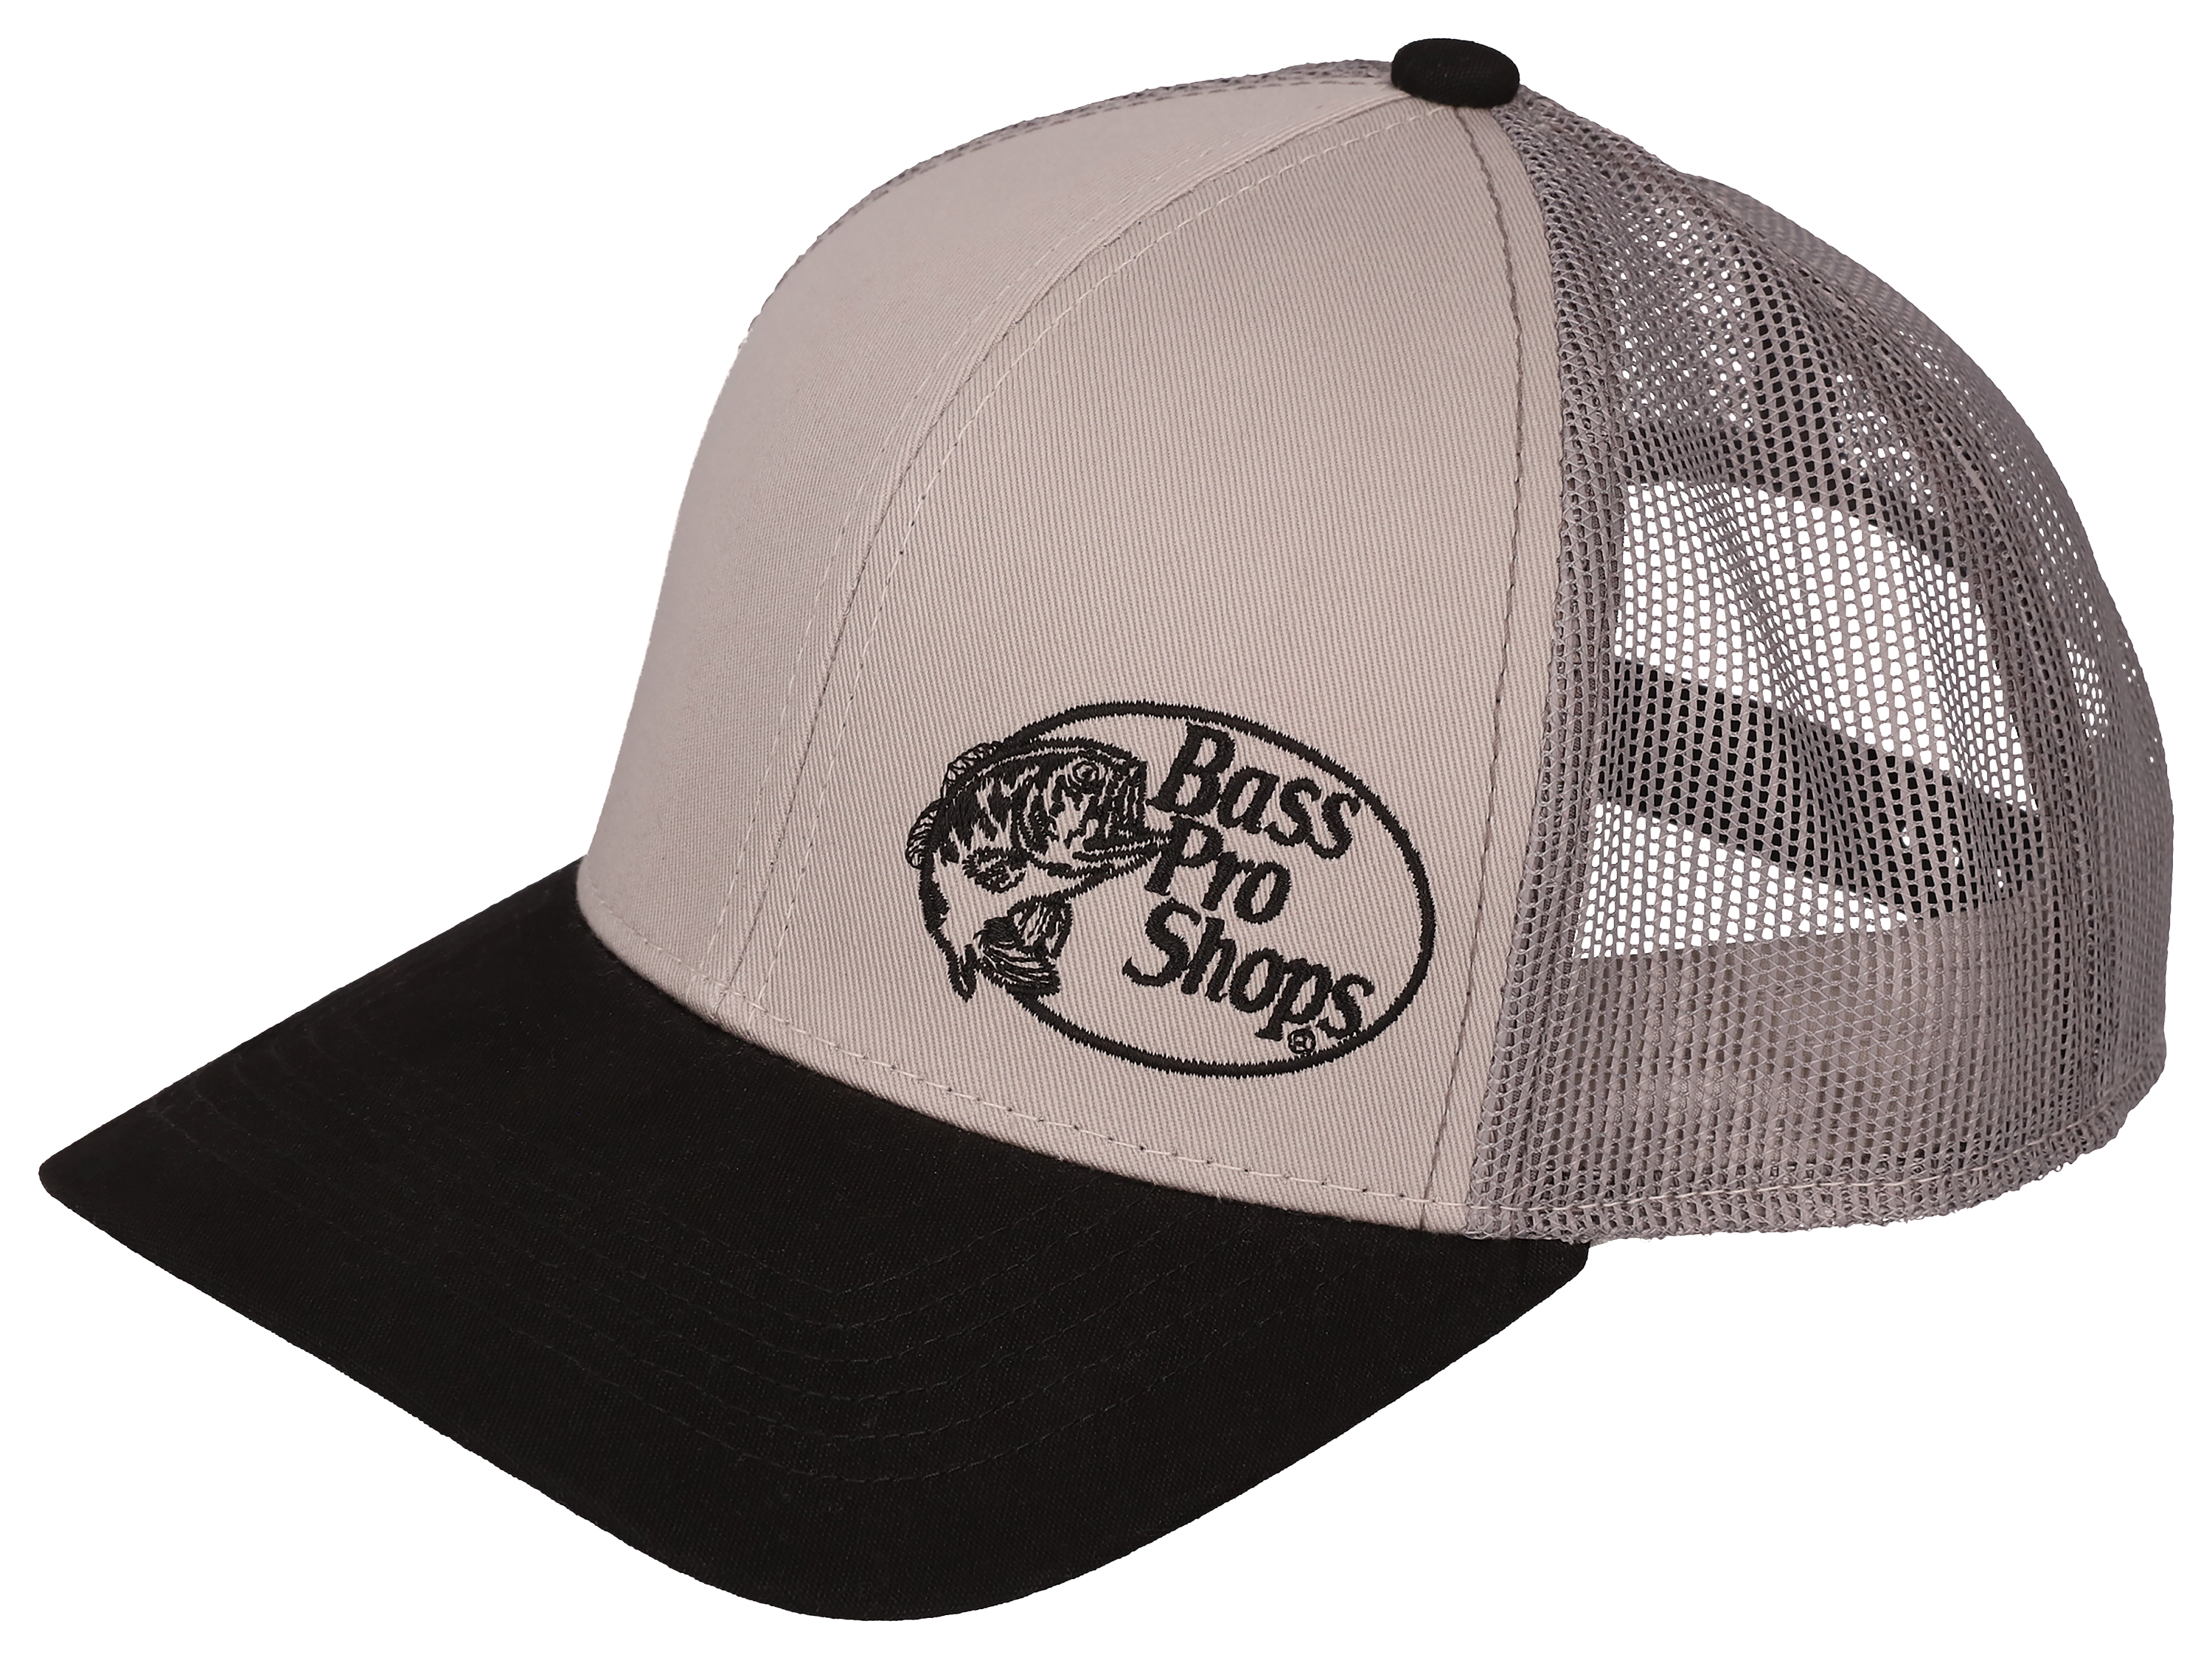 Bass Pro Shops Embroidered Logo Mesh Trucker Cap - Cabelas - BASS